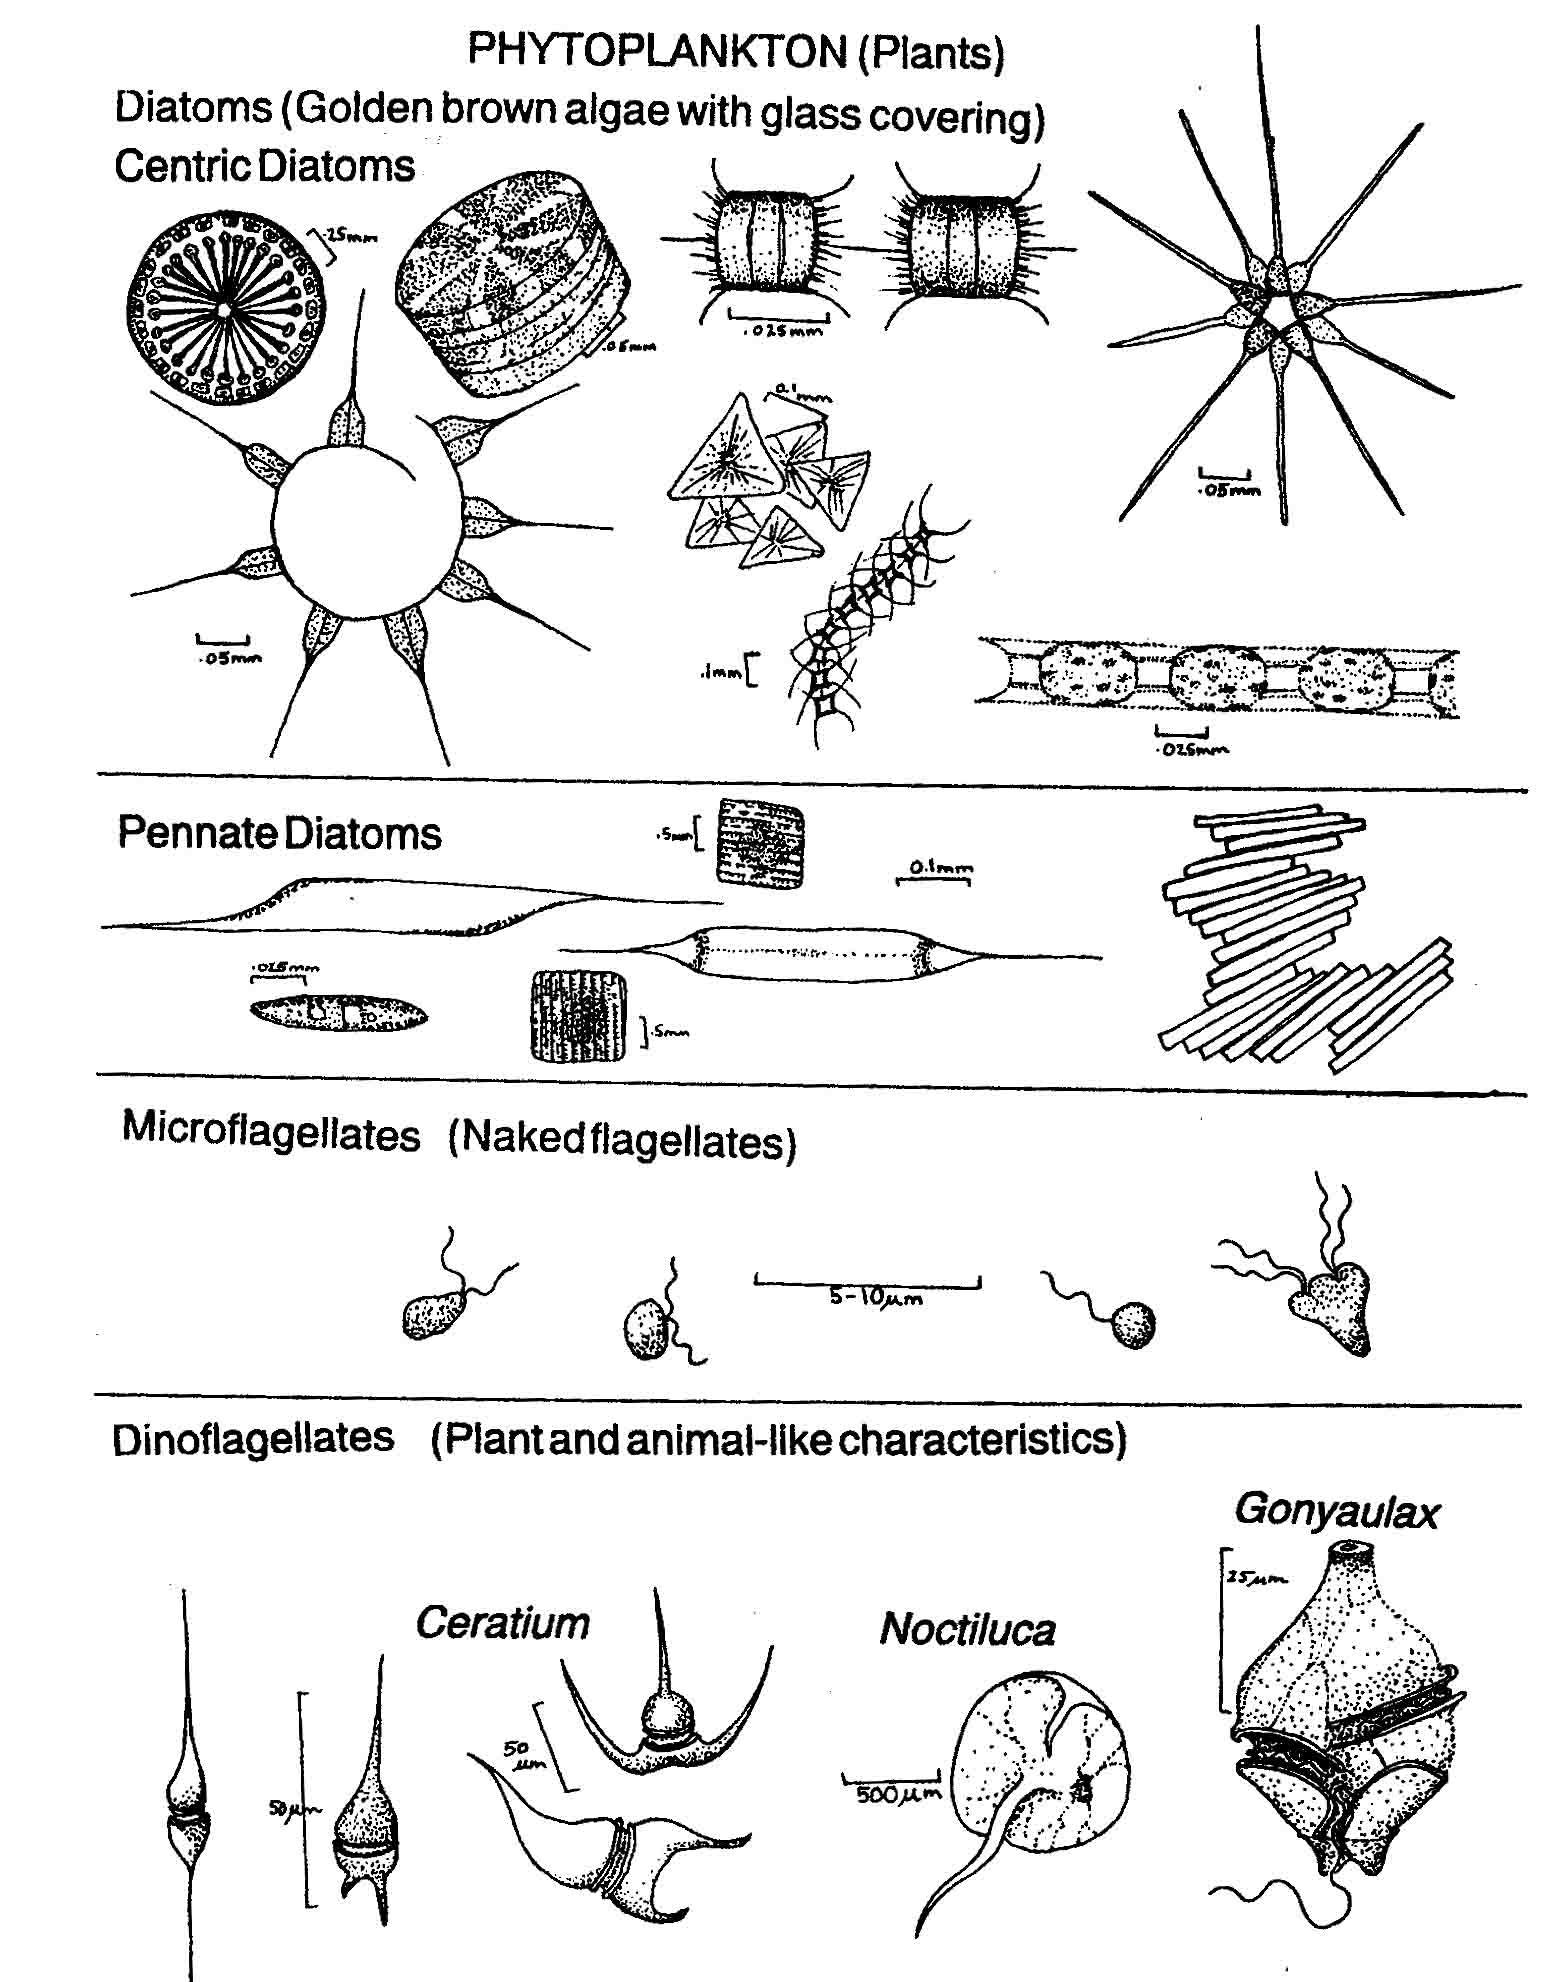 Plankton diagram.jpg